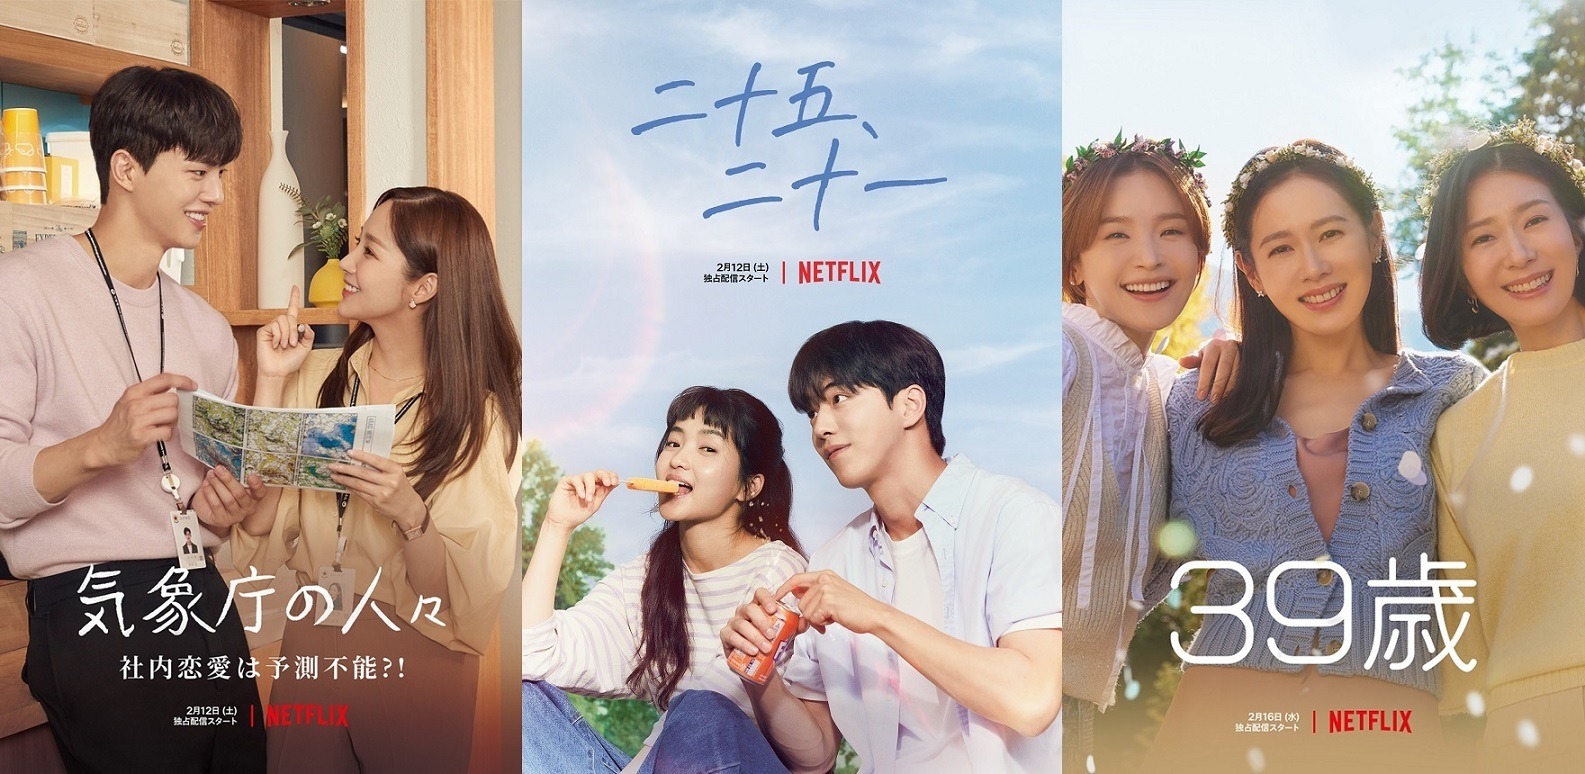 気象庁の人々 から 39歳 まで 沼落ち確定 Netflix韓国恋愛ドラマ予告編到着 Cinemacafe Net